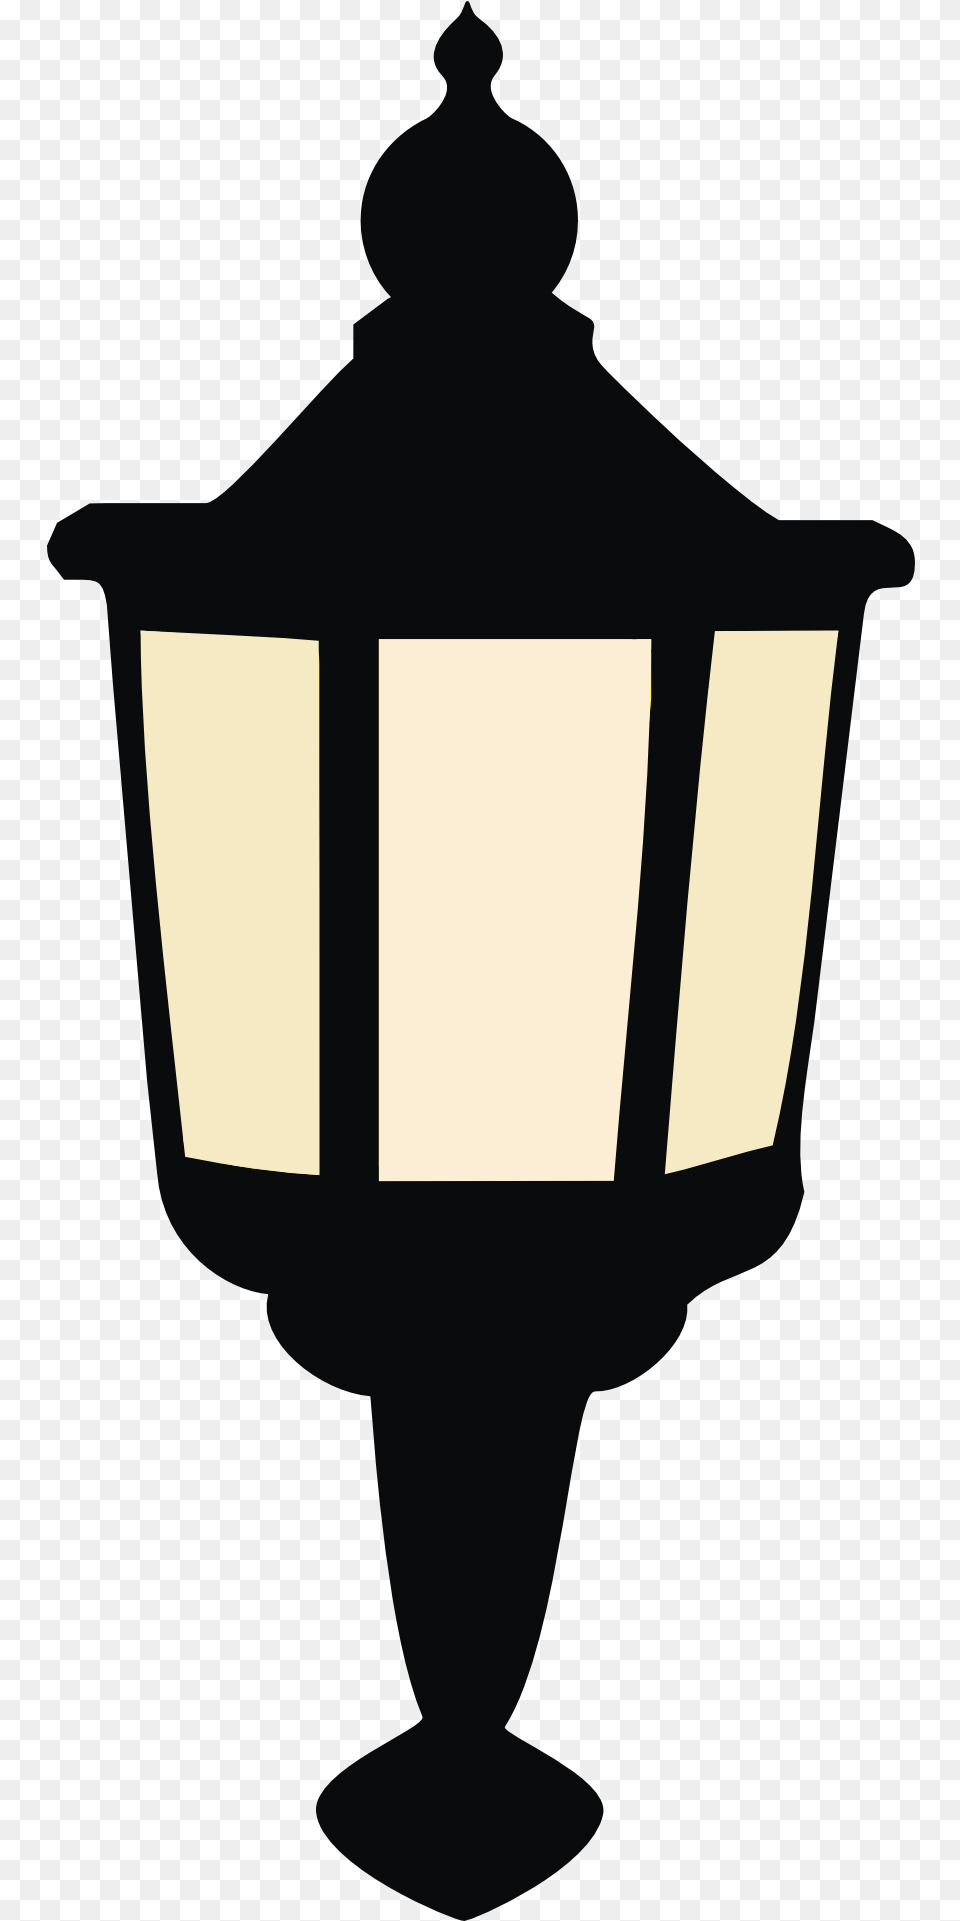 Lentera, Lamp, Lampshade, Cross, Symbol Free Png